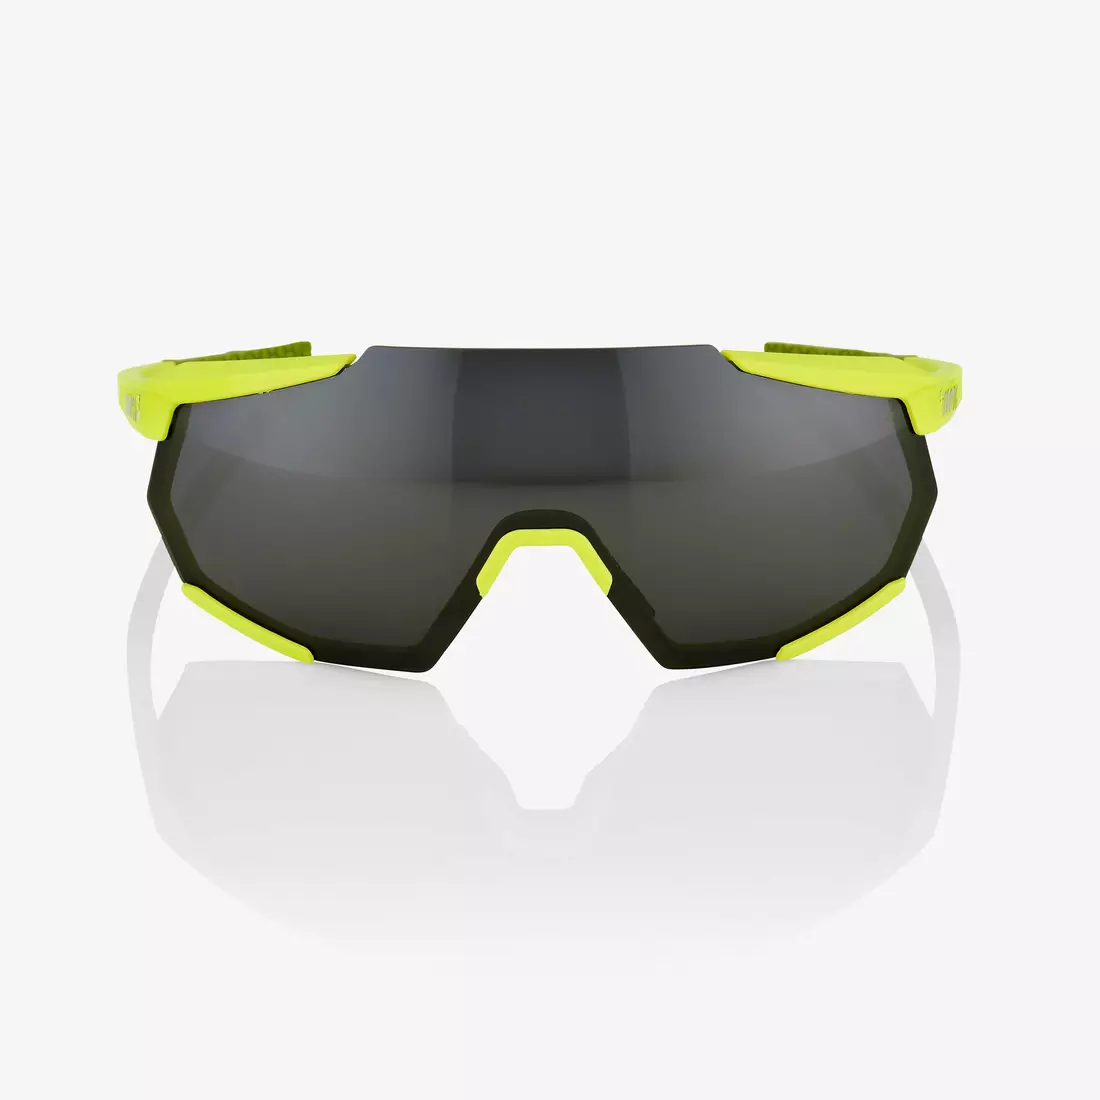 100%  sportovní brýle RACETRAP (černé zrcadlové čočky, LT 11% + čiré čočky, LT 93%) soft tact banana STO-61037-004-61